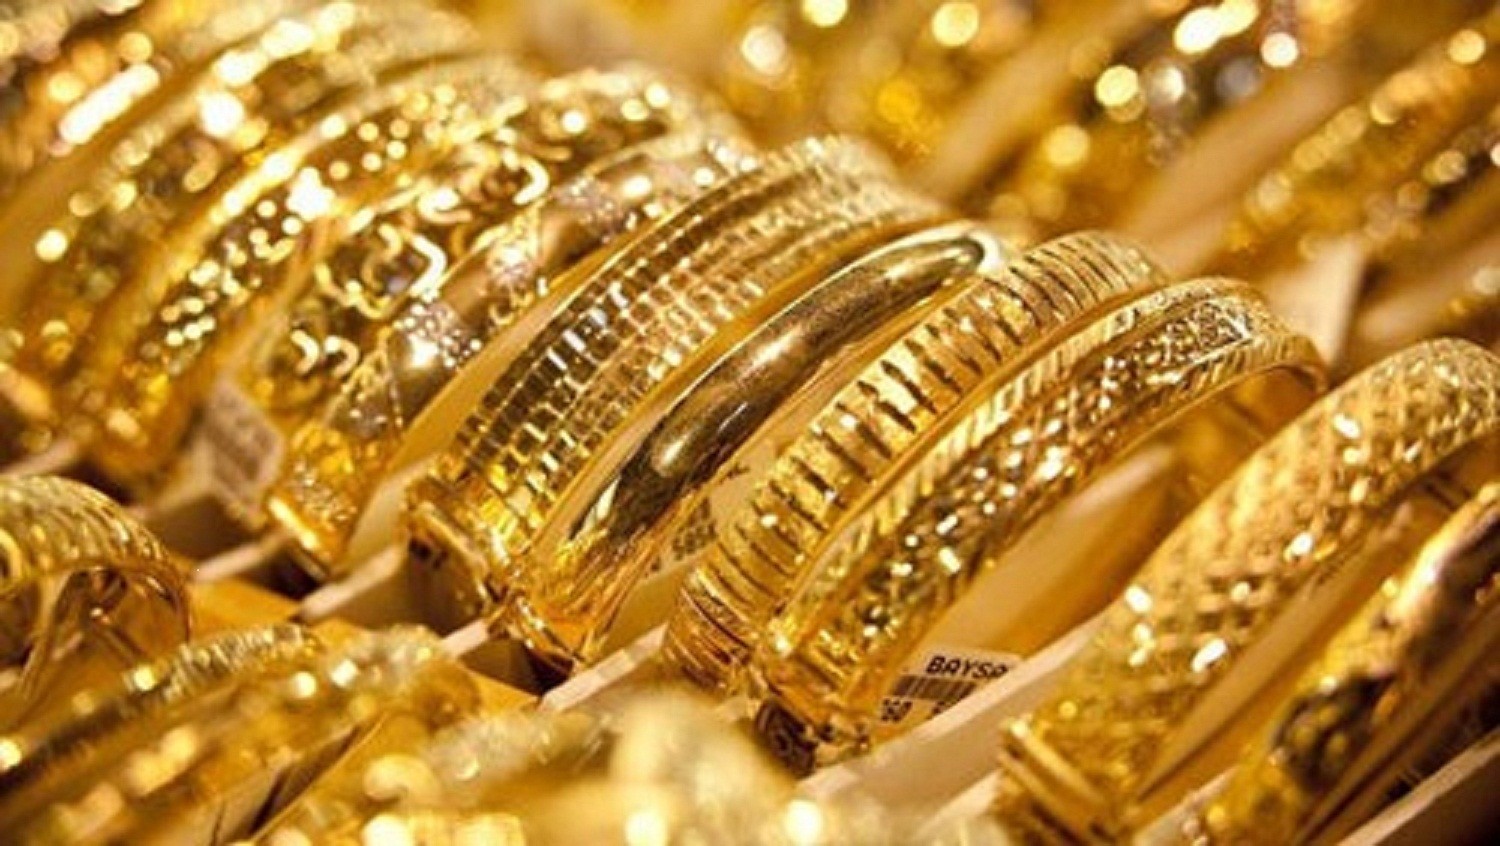 أسعار الذهب في مصر وارتفاع كبير لسعر الجرام بقيمة 41 جنيه وتوقعات بمزيد من الارتفاع